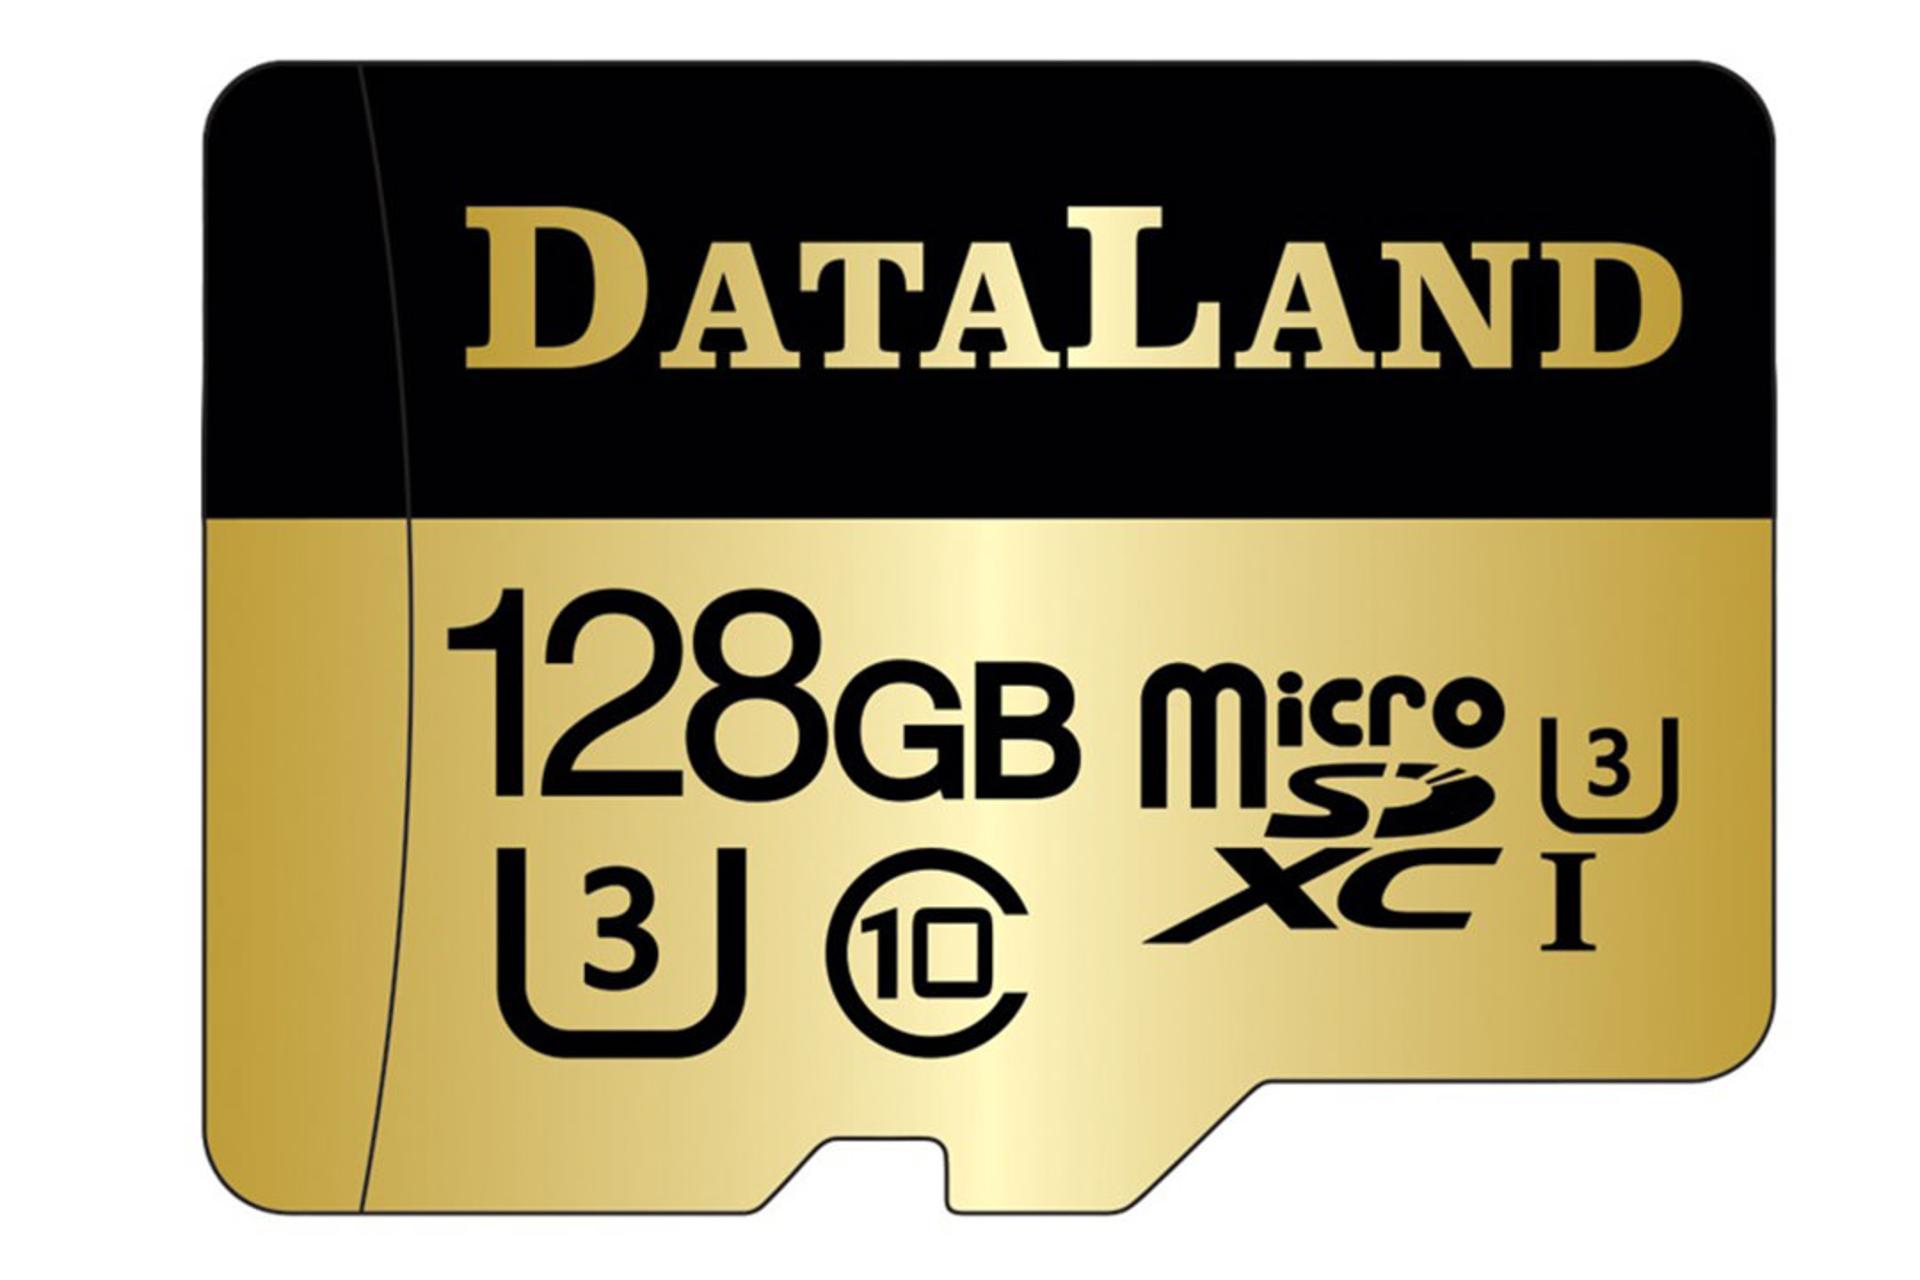 مرجع متخصصين ايران DataLand 600x microSDXC Class 10 UHS-I U3 128GB